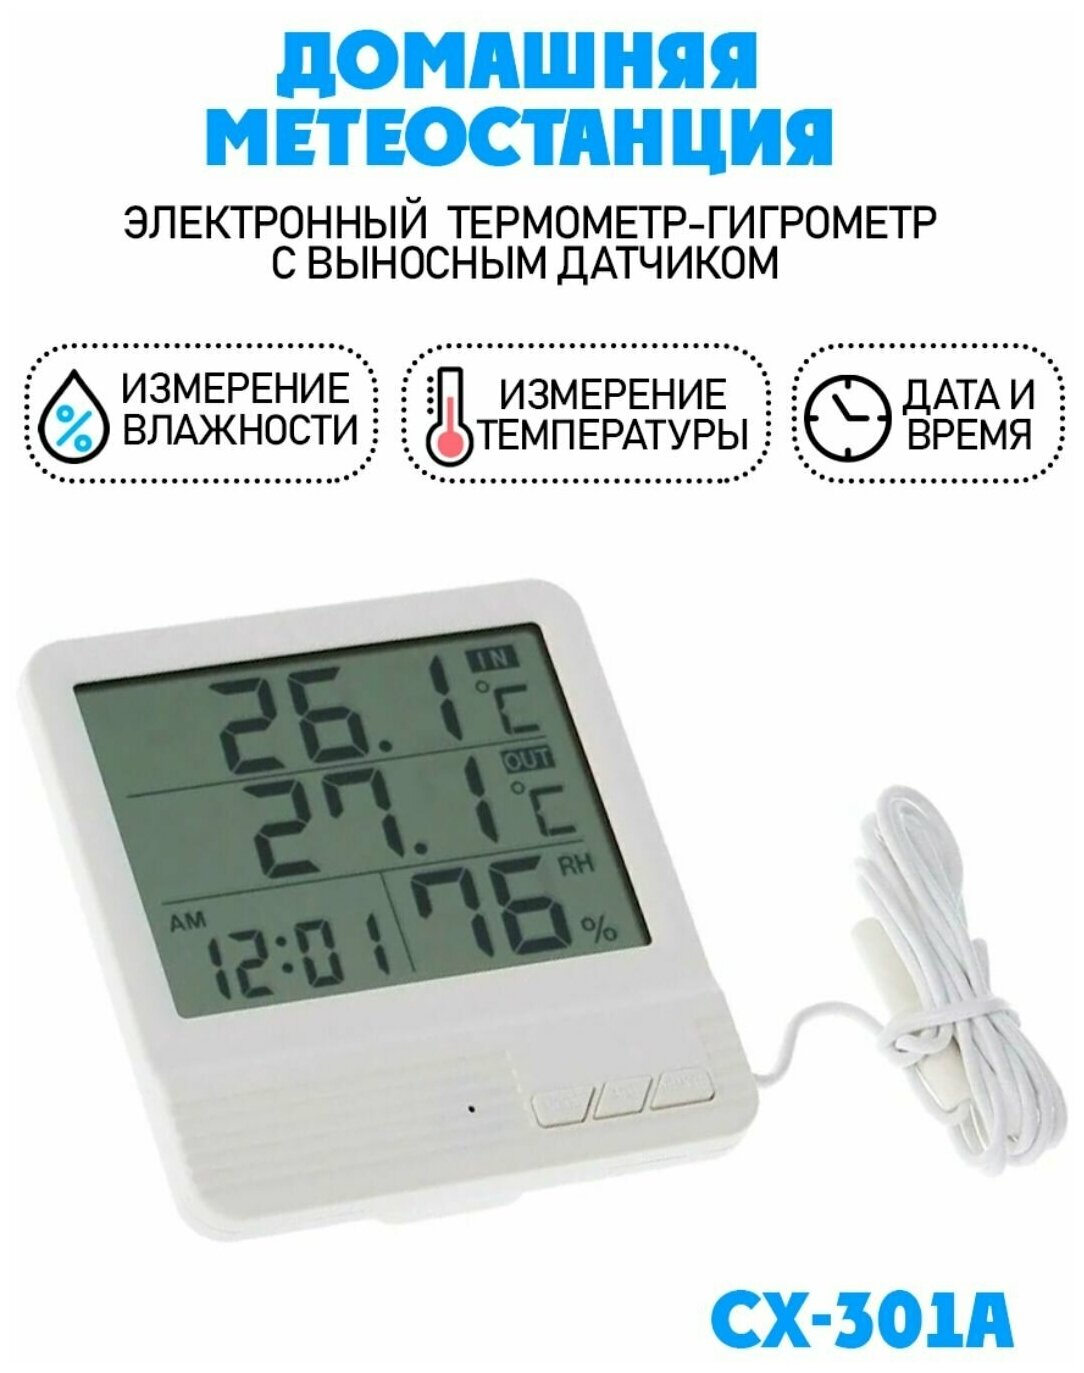 Термометр/ термометр гигрометр цифровой / выносной датчик/ CX-301A цвет белый - фотография № 3